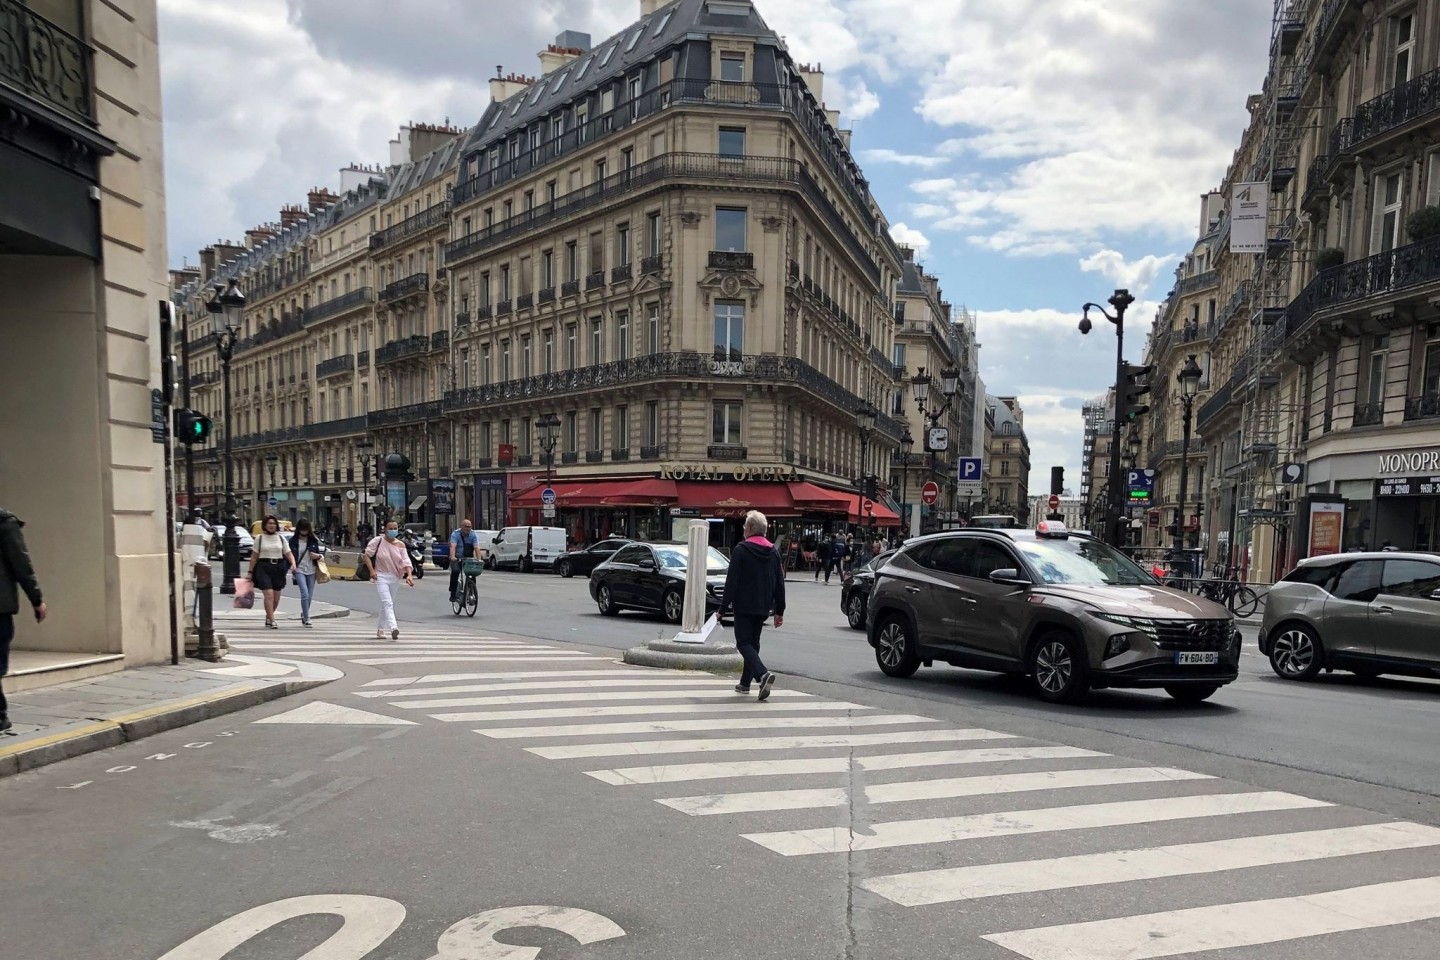 Auf einer Straße im Zentrum von Paris gilt Tempo 30. Ab dem 30. August 2021 wird diese Geschwindigkeitsbegrenzung in der französischen Hauptstadt großflächig eingeführt.